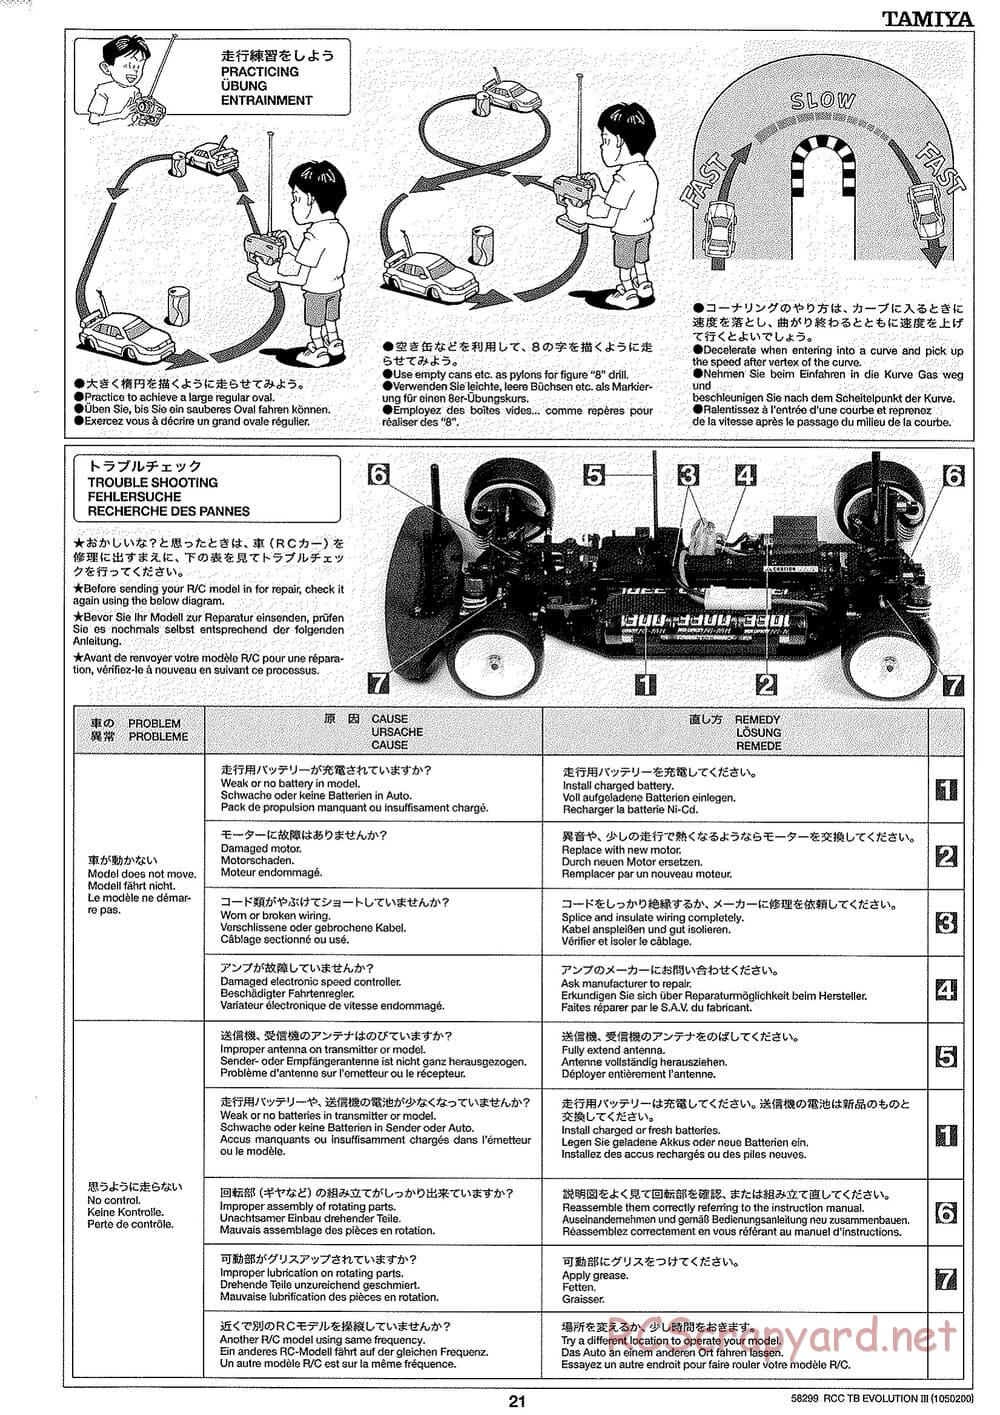 Tamiya - TB Evolution III Chassis - Manual - Page 22